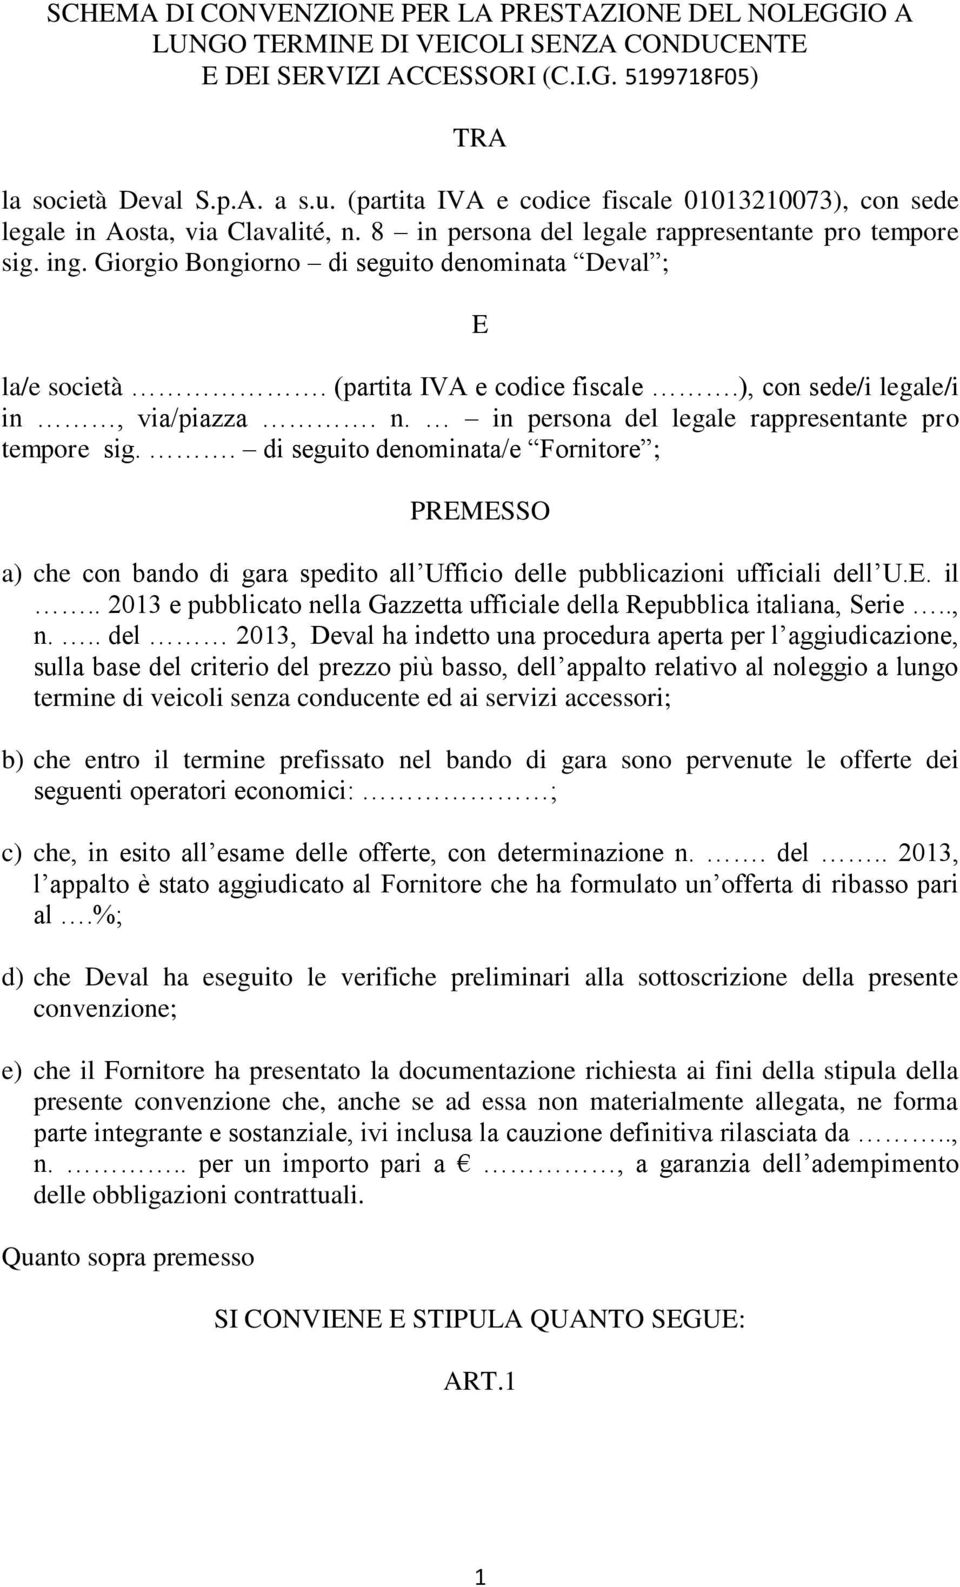 Giorgio Bongiorno di seguito denominata Deval ; E la/e società. (partita IVA e codice fiscale.), con sede/i legale/i in, via/piazza. n. in persona del legale rappresentante pro tempore sig.